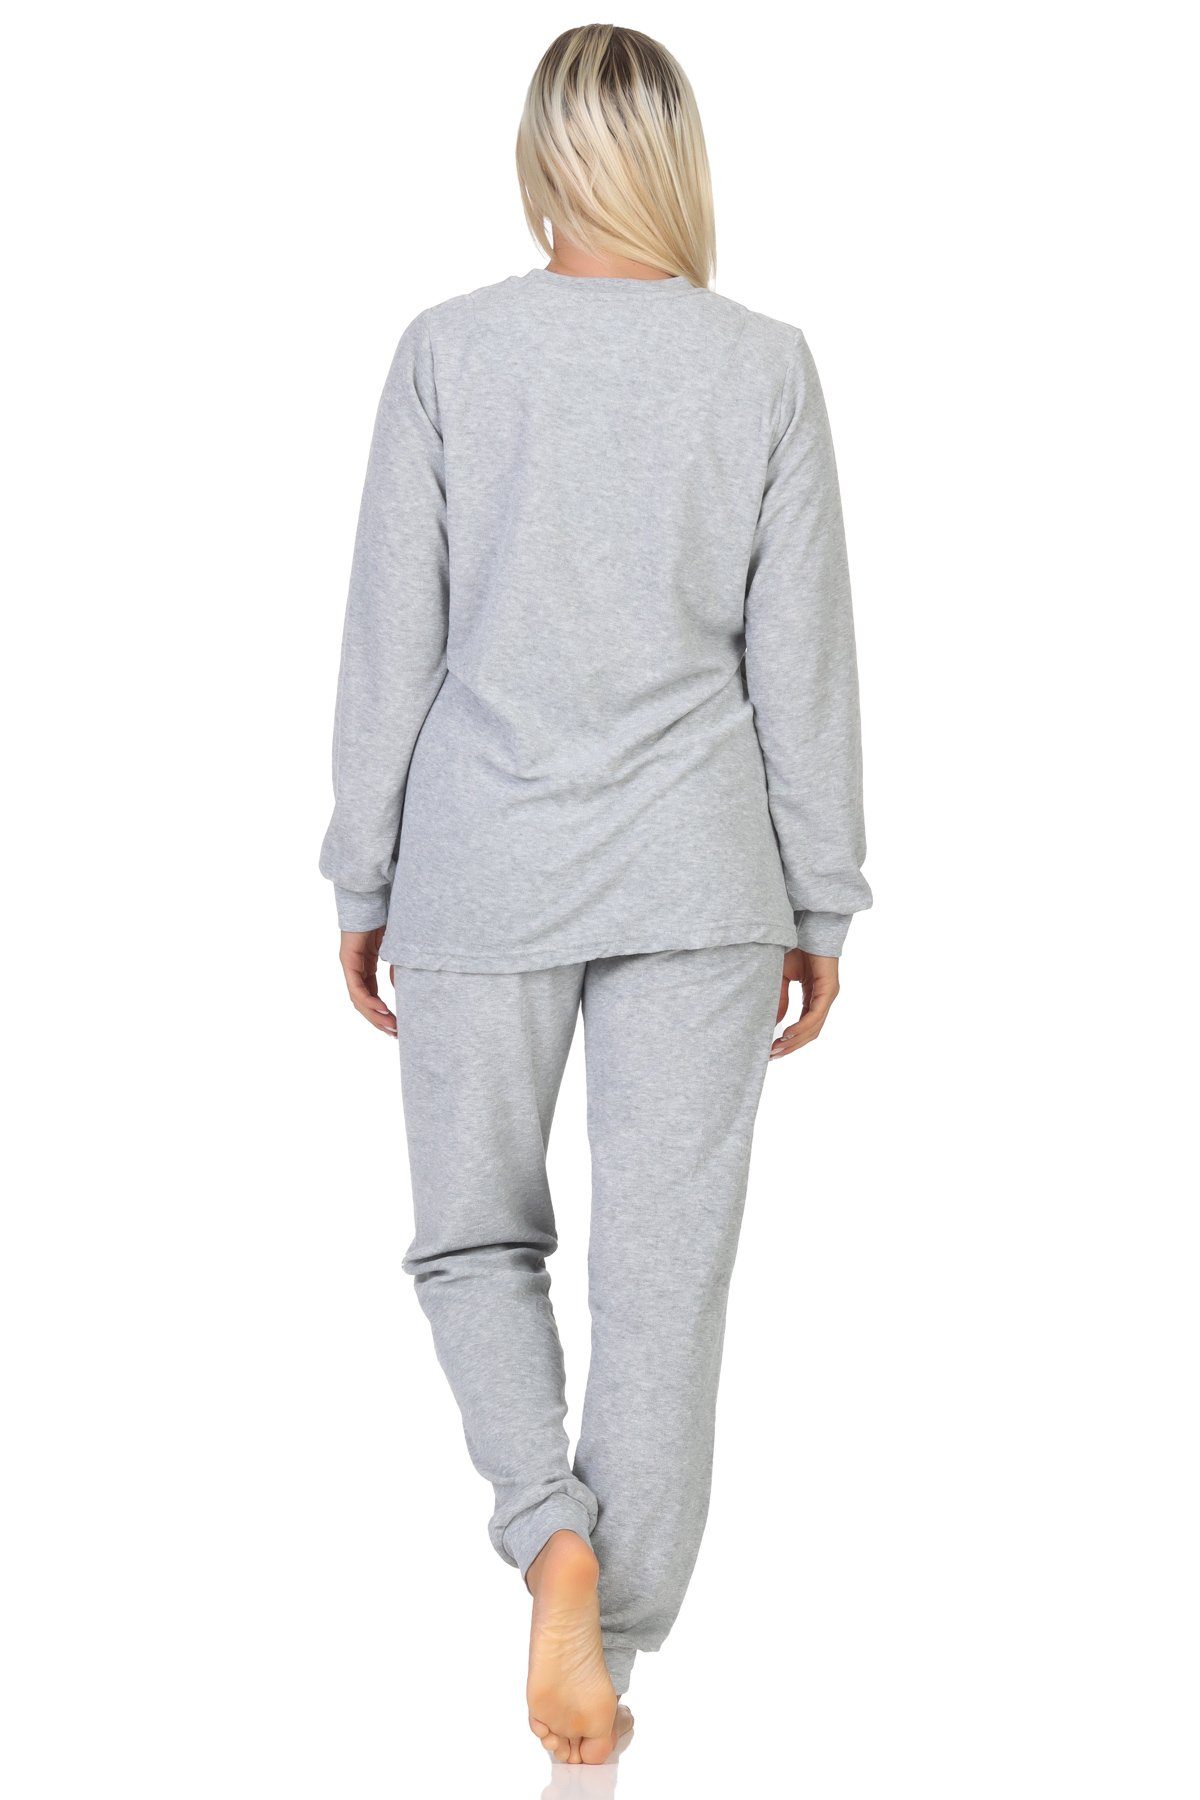 Schlafanzug grau-mel. Normann auch Normann - Damen Pyjama Frottee in Übergröße Loungewear